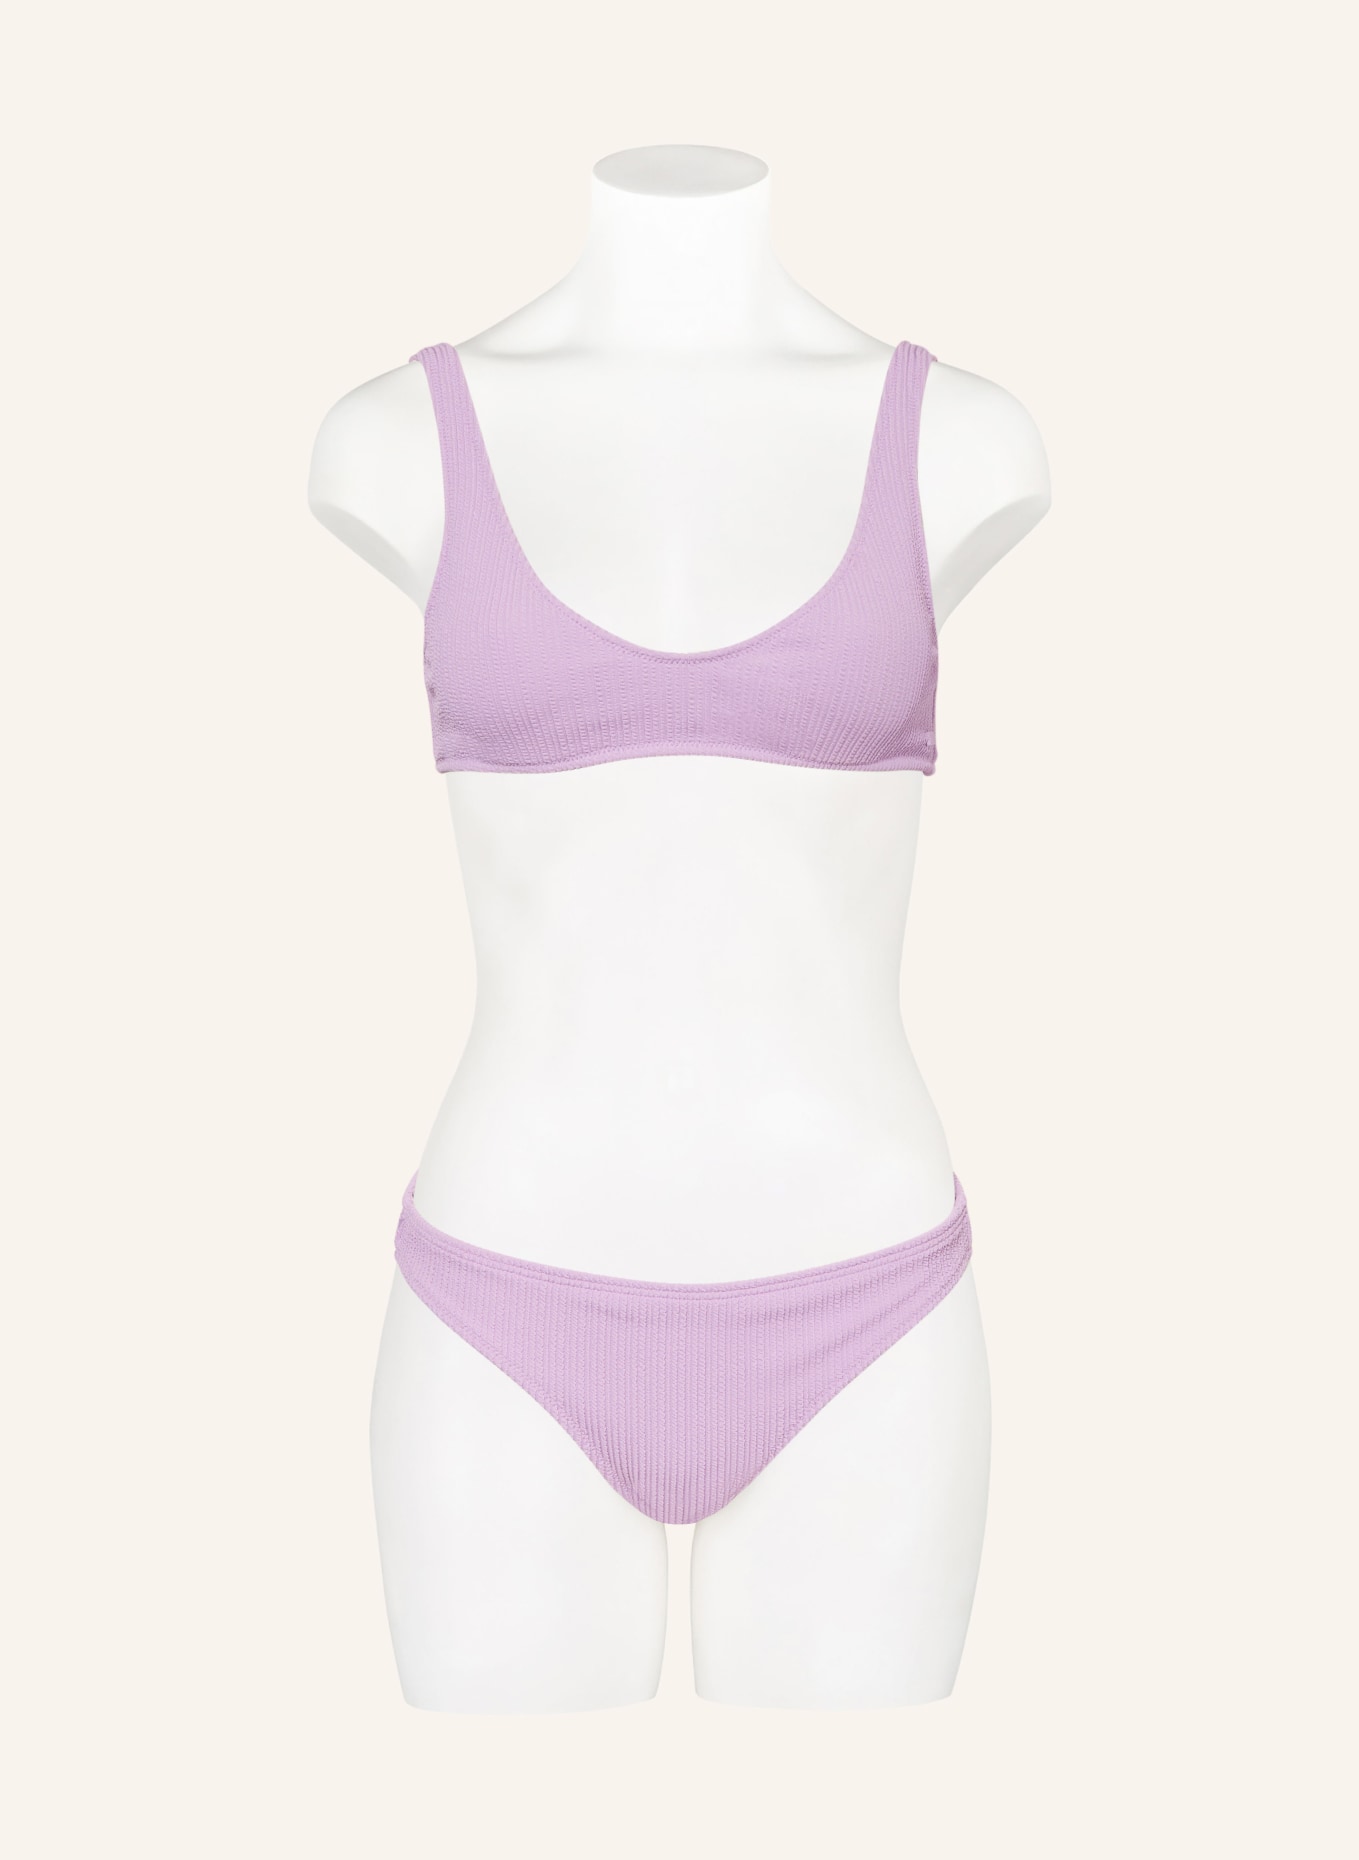 ROXY Bralette bikini top ARUBA, Color: LIGHT PURPLE (Image 2)